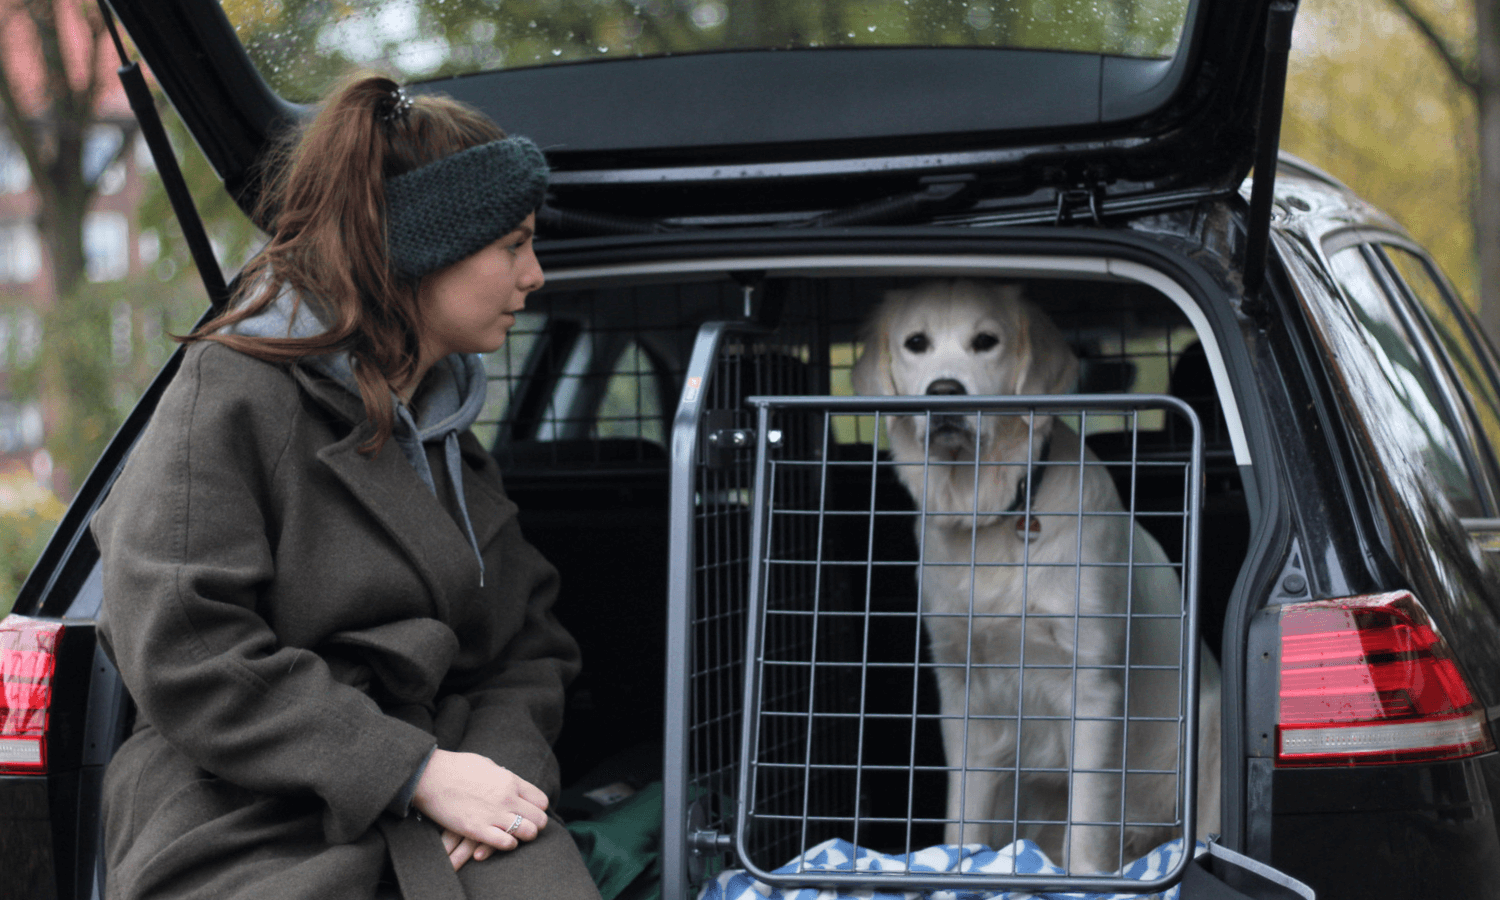 Hunde im Auto sichern mit Travall Hundegitter und Heckgitter